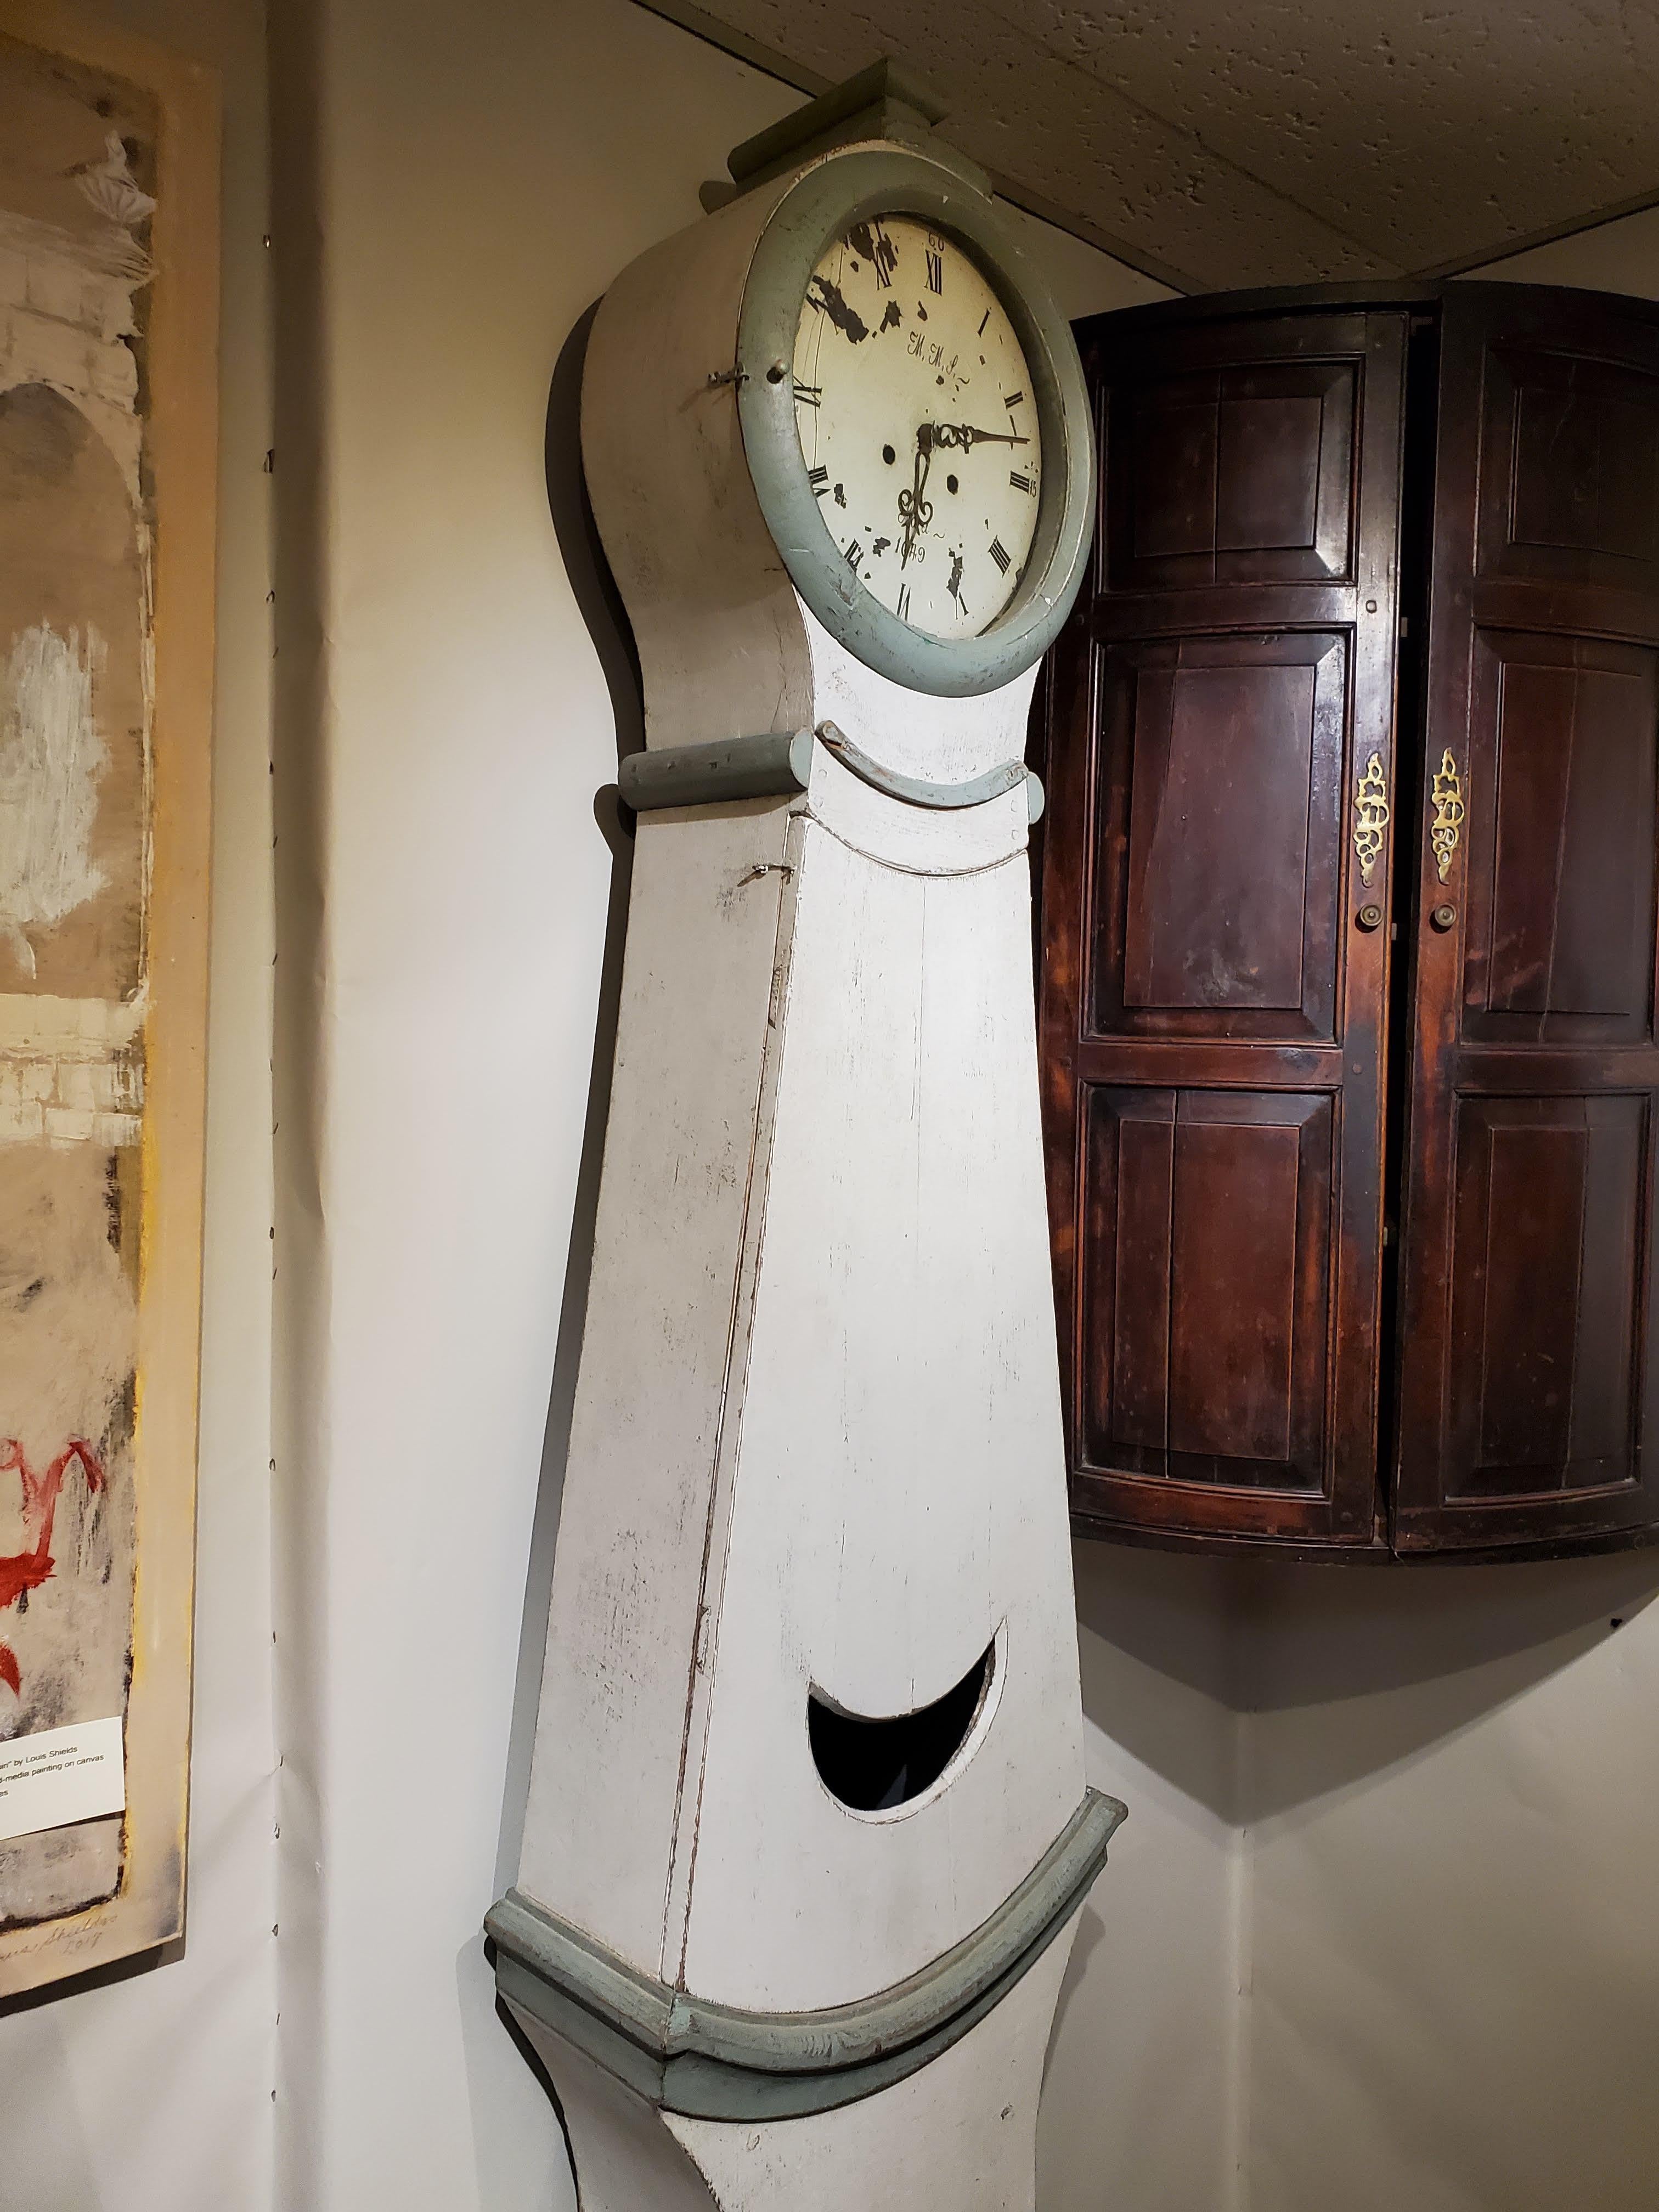 Horloge suédoise à long boîtier de la fin du XIXe siècle. De forme exagérée avec une face ronde. Le tout conservant la finition peinte d'origine et les horloges d'origine. 
Suède, vers 1870.
Mesures : 89 H 84 L 9 P.